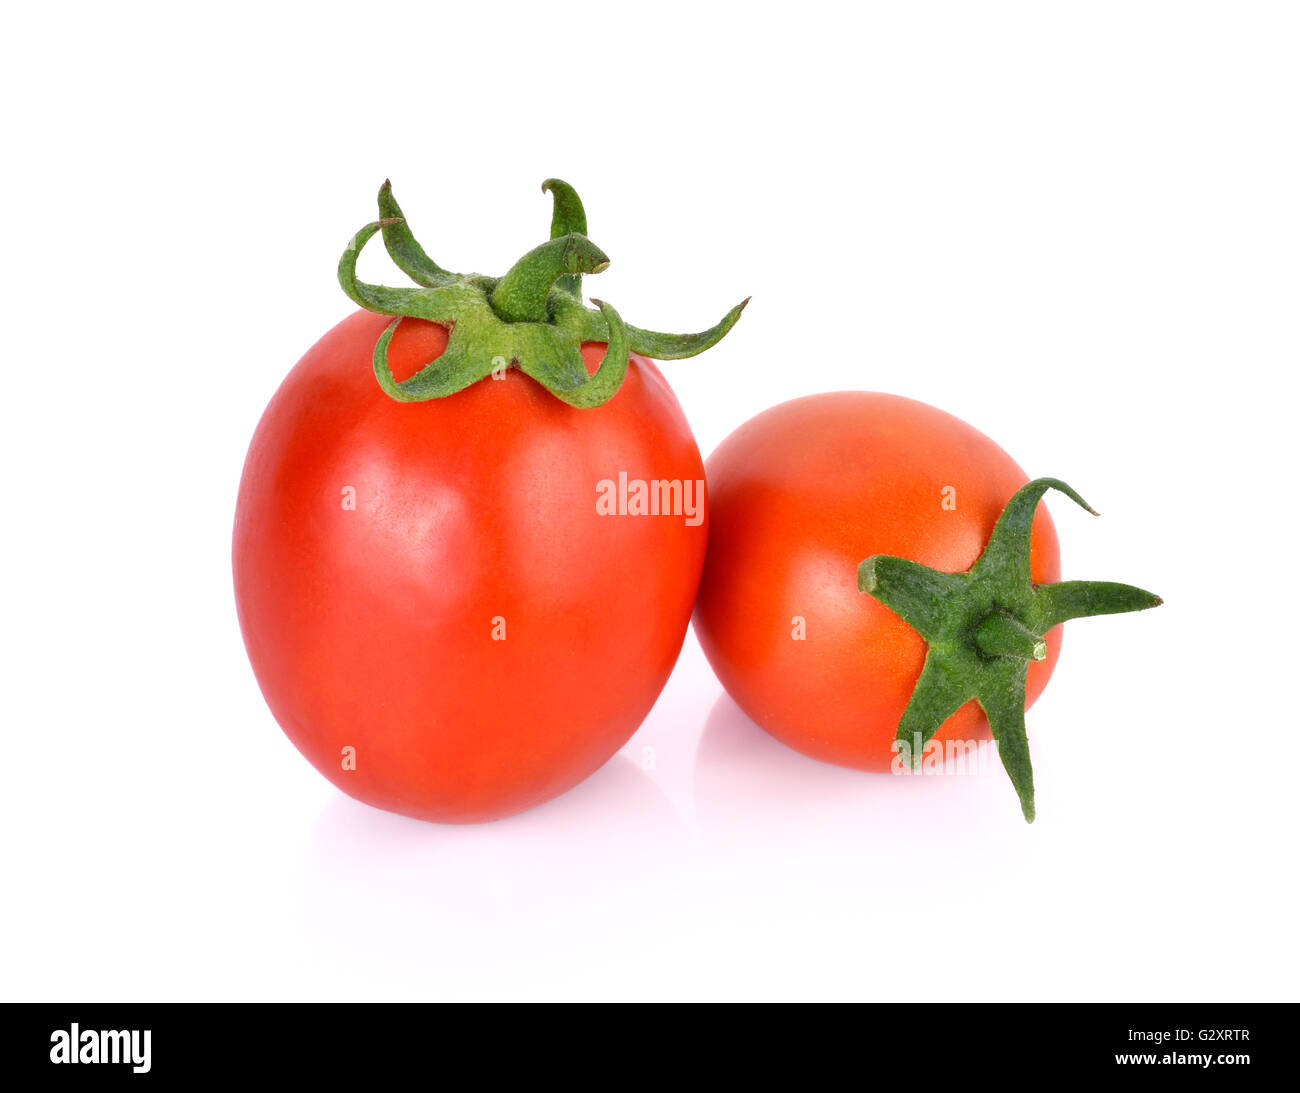 Tomato on white background Stock Photo